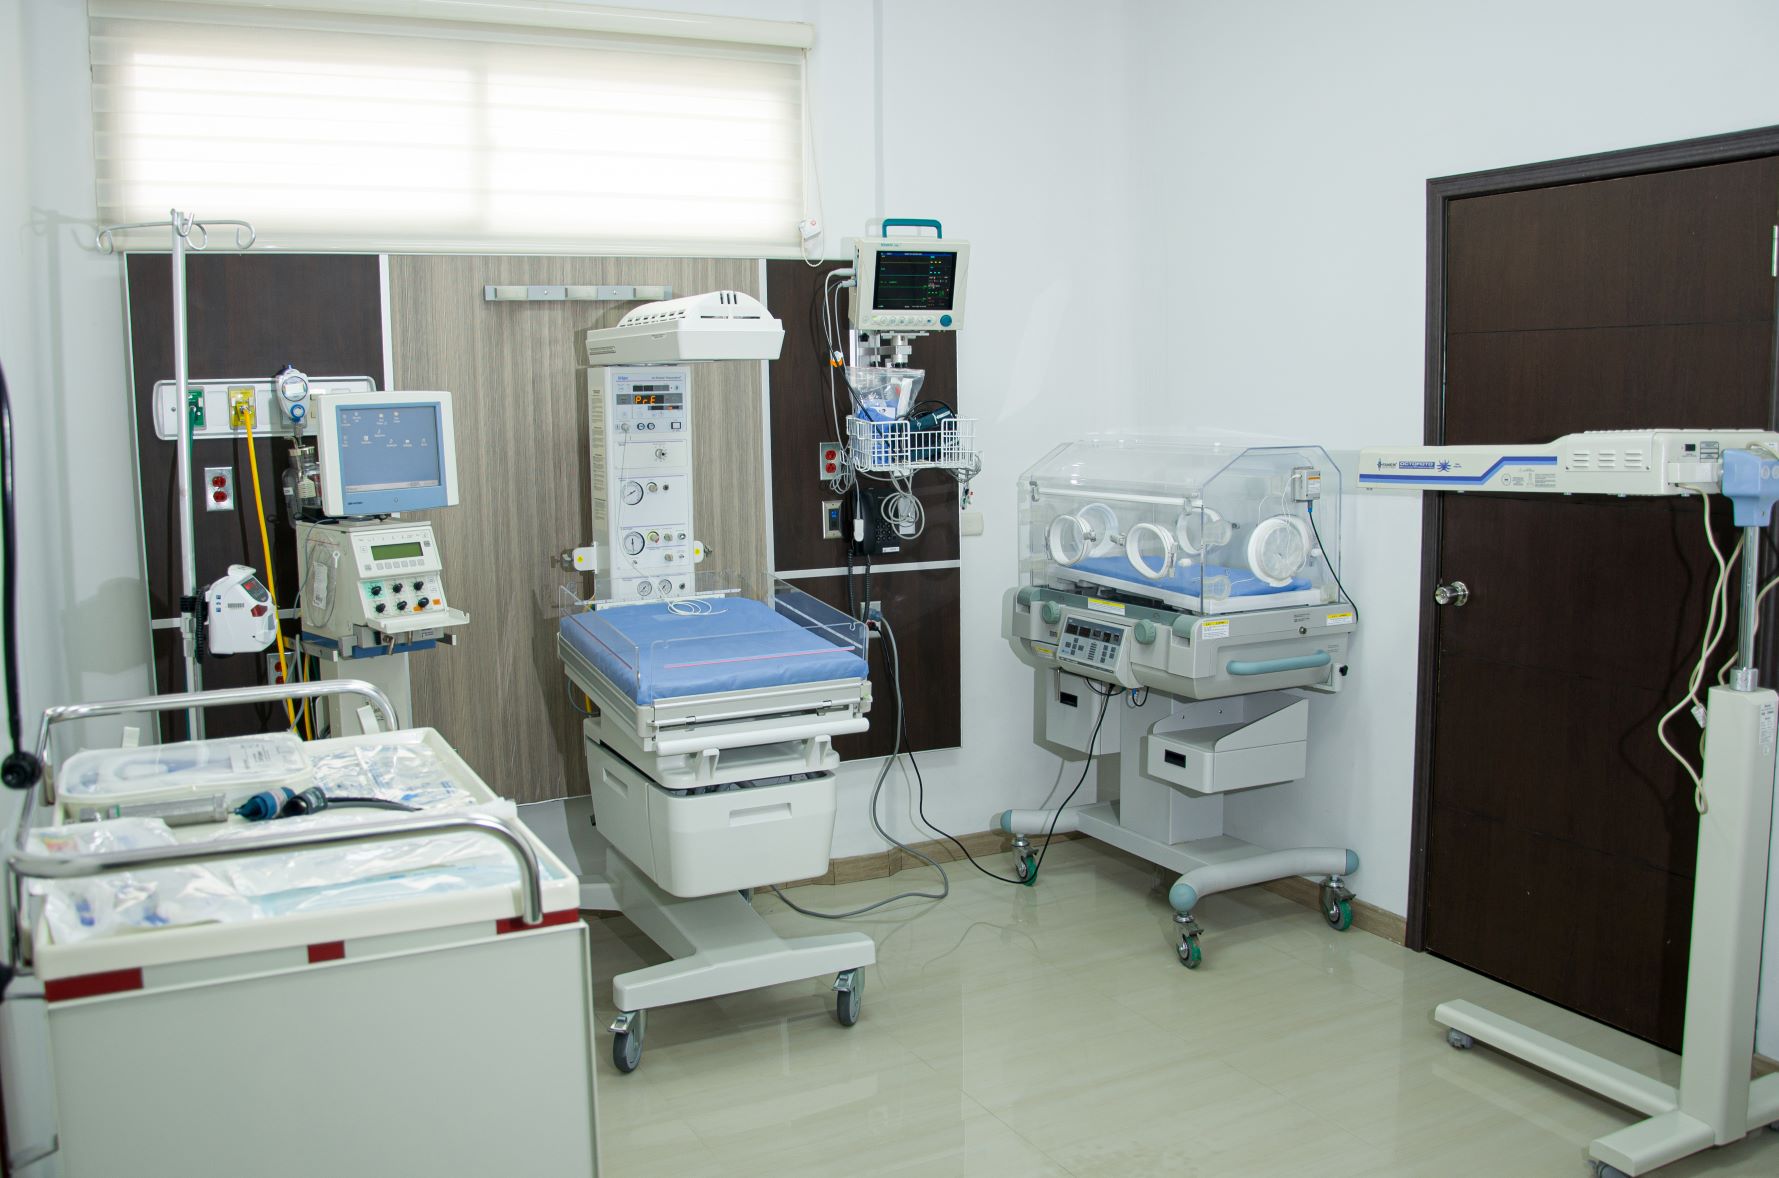 Hospitalización (Endovascular)